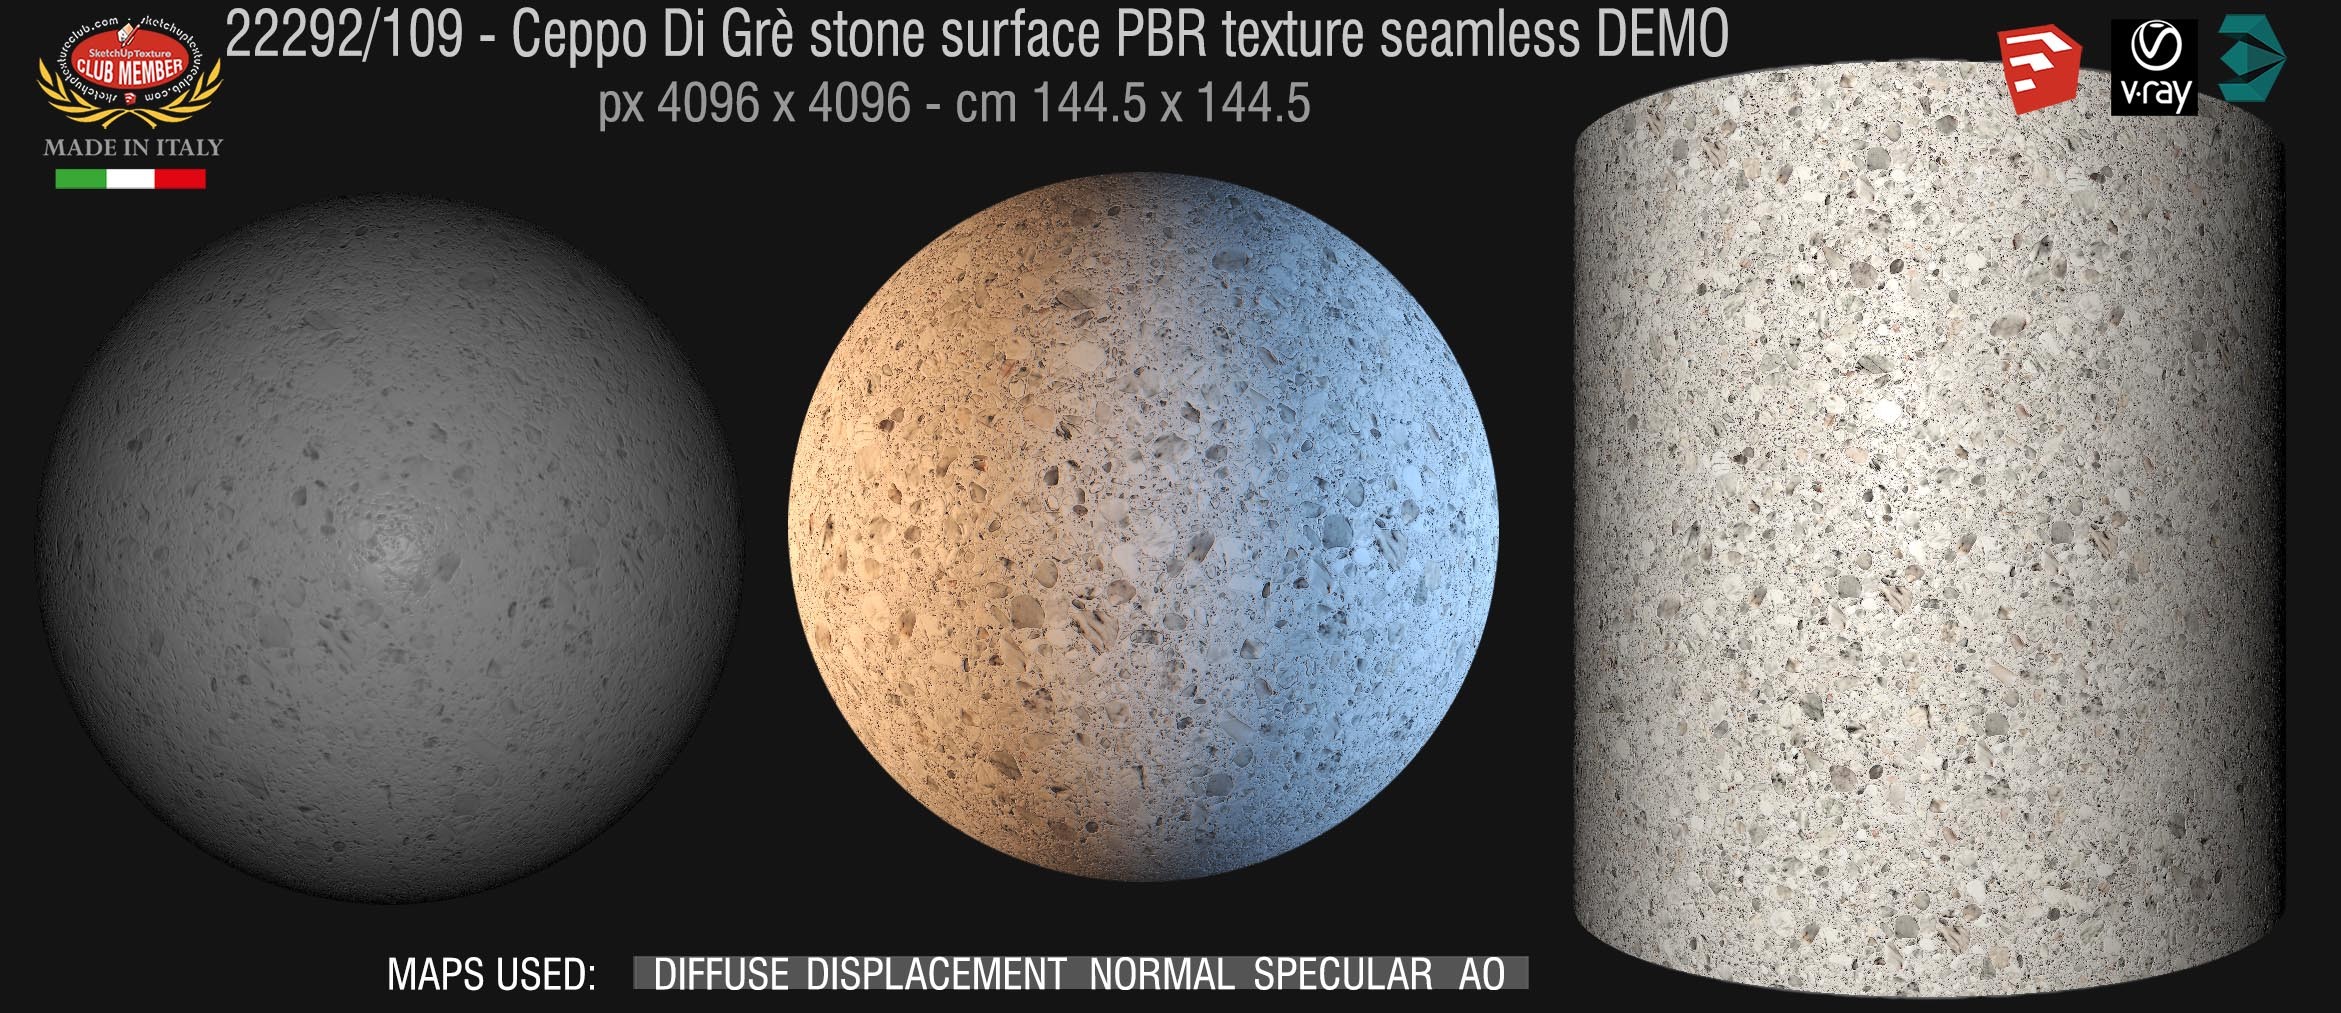 22292_109 Ceppo Di Grè stone surface PBR texture seamless DEMO